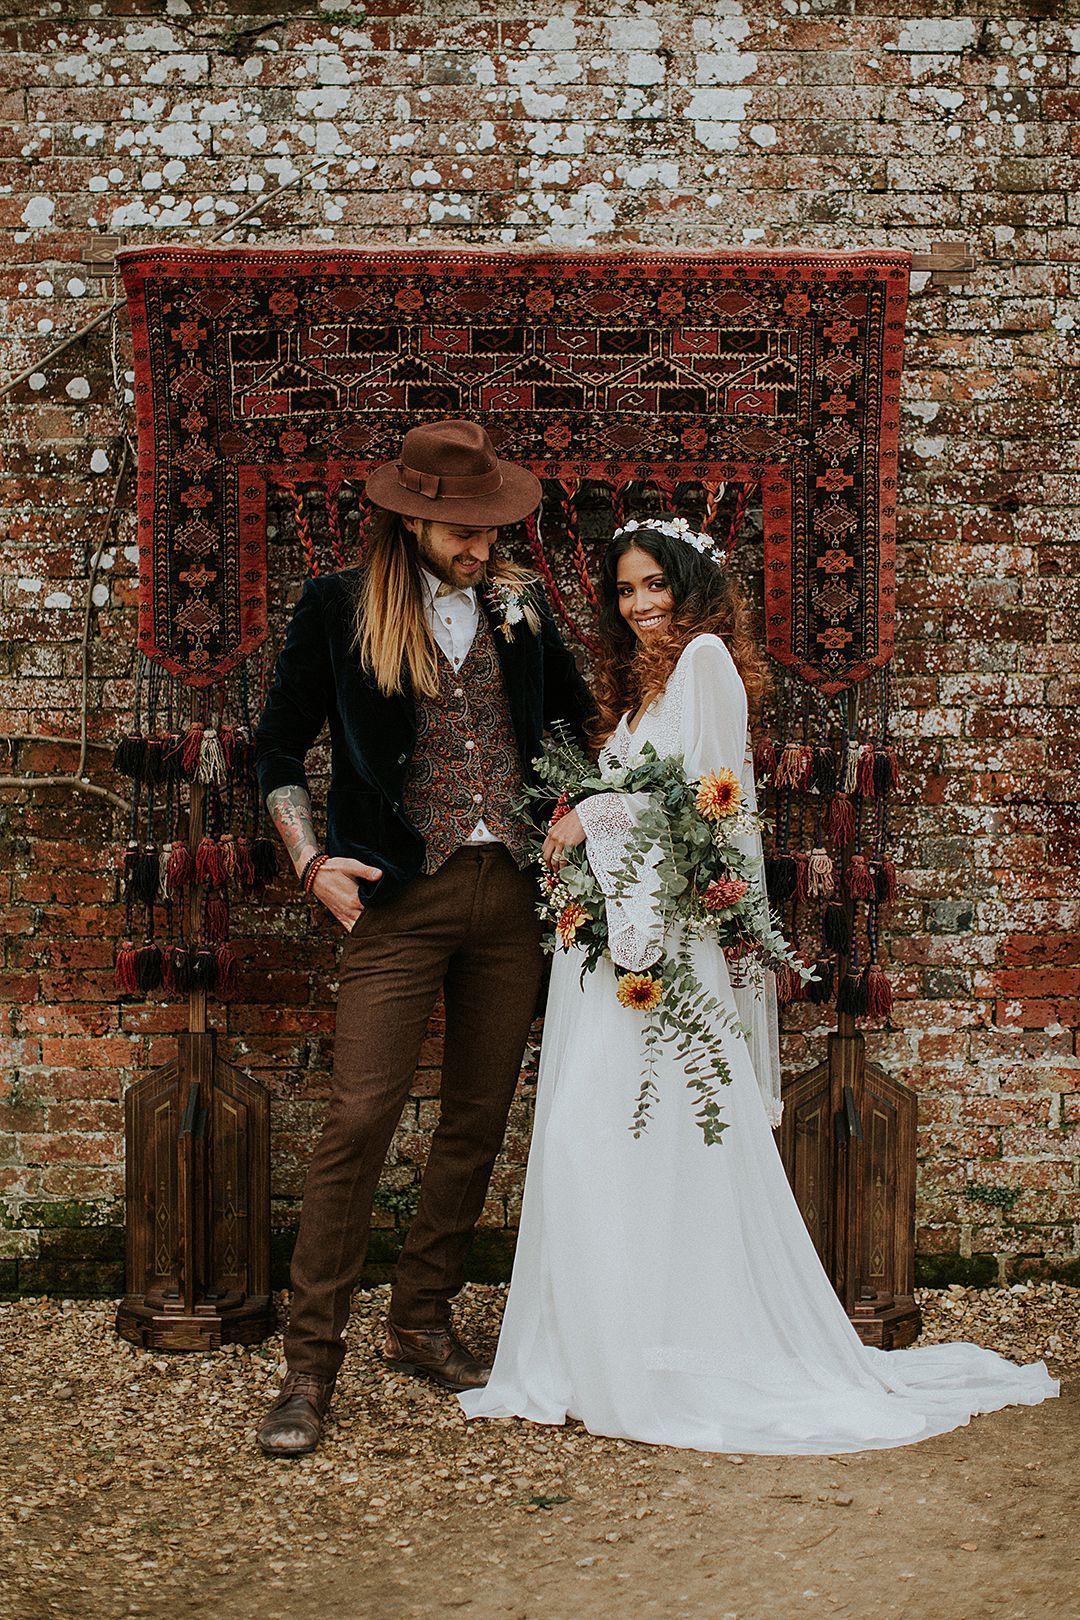 Свадьба в стиле рустик: оформление, одежда гостей, жениха и невесты, пригласительные своими руками на деревенскую свадьбу